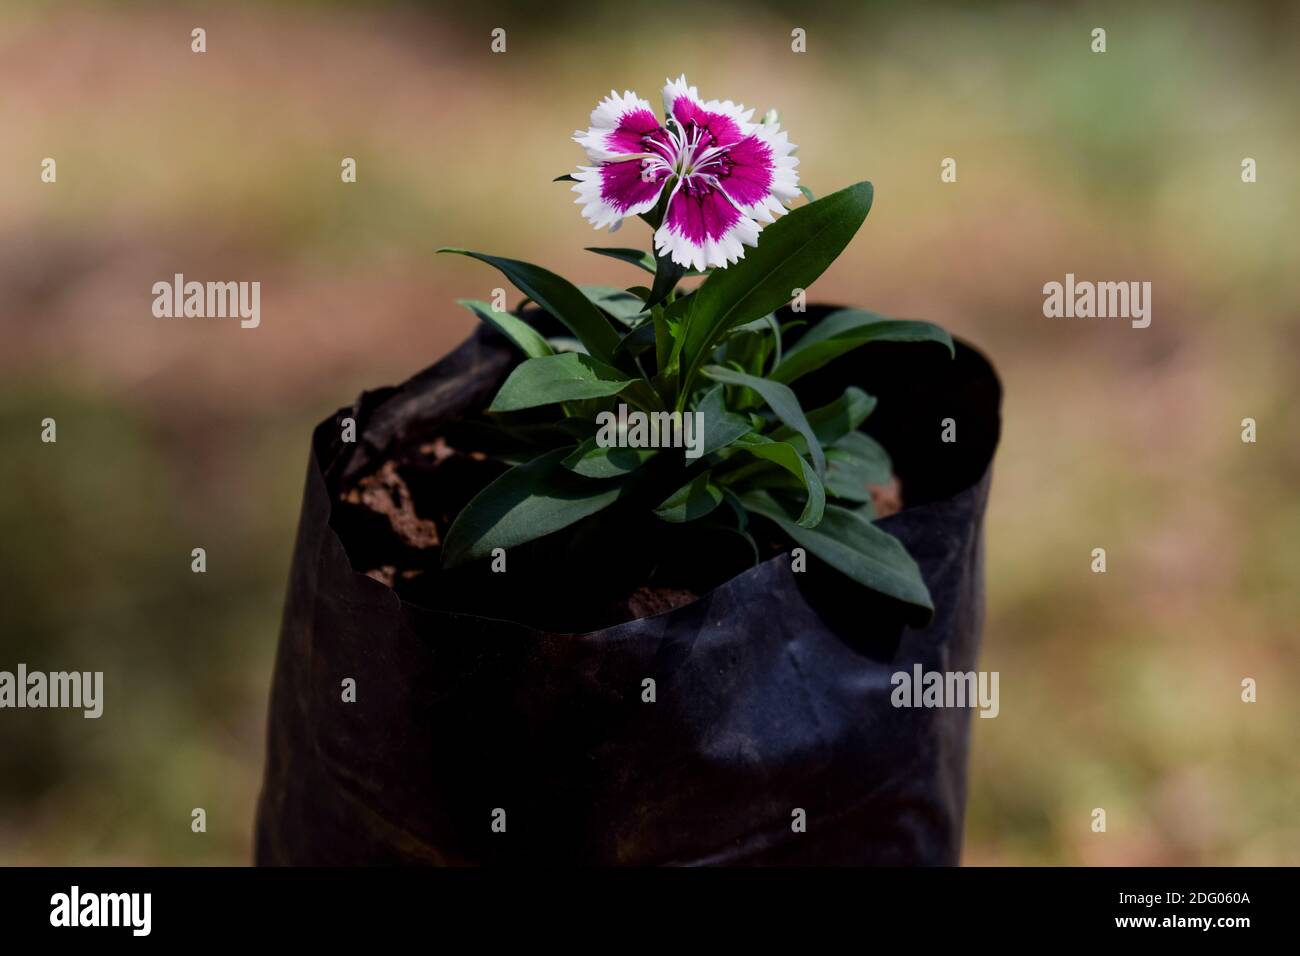 Dolce william Barbarini viola e bianco fiore bicolore Dianthus noto anche come Pinks in nero crescere borsa con stelo folliage con sottili foglie verdi. B Foto Stock